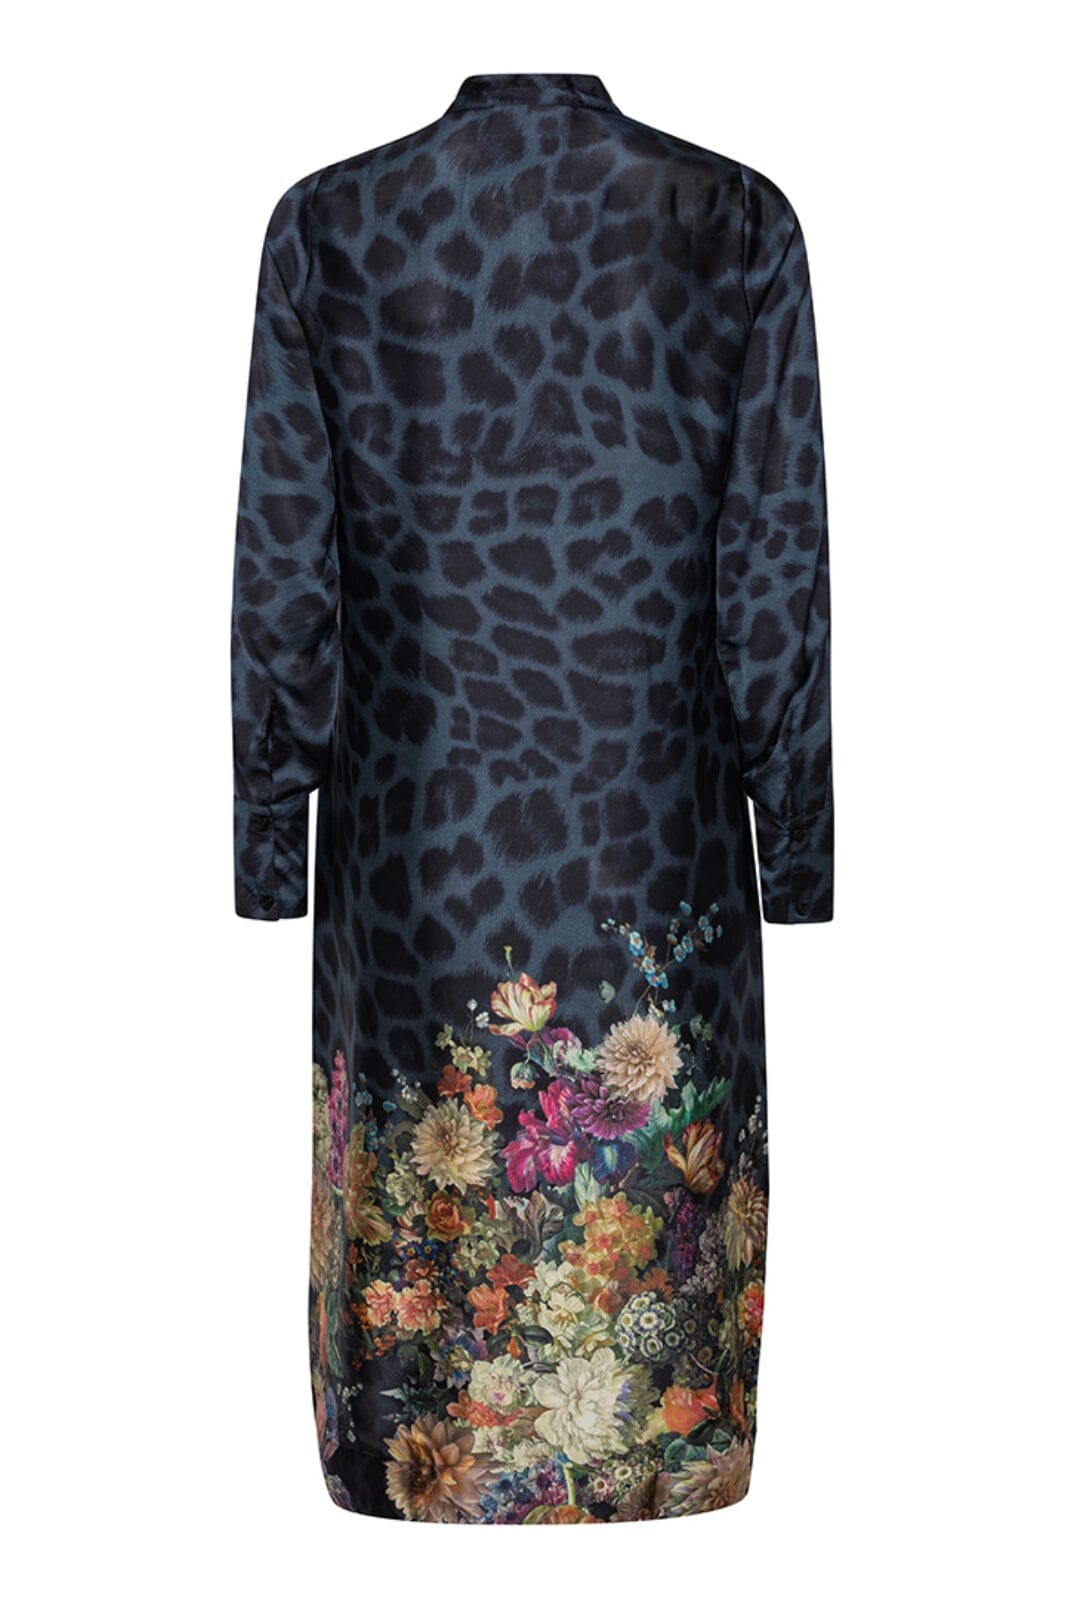 Karmamia - Joelle Dress - Navy Flower Leopard Kjoler 